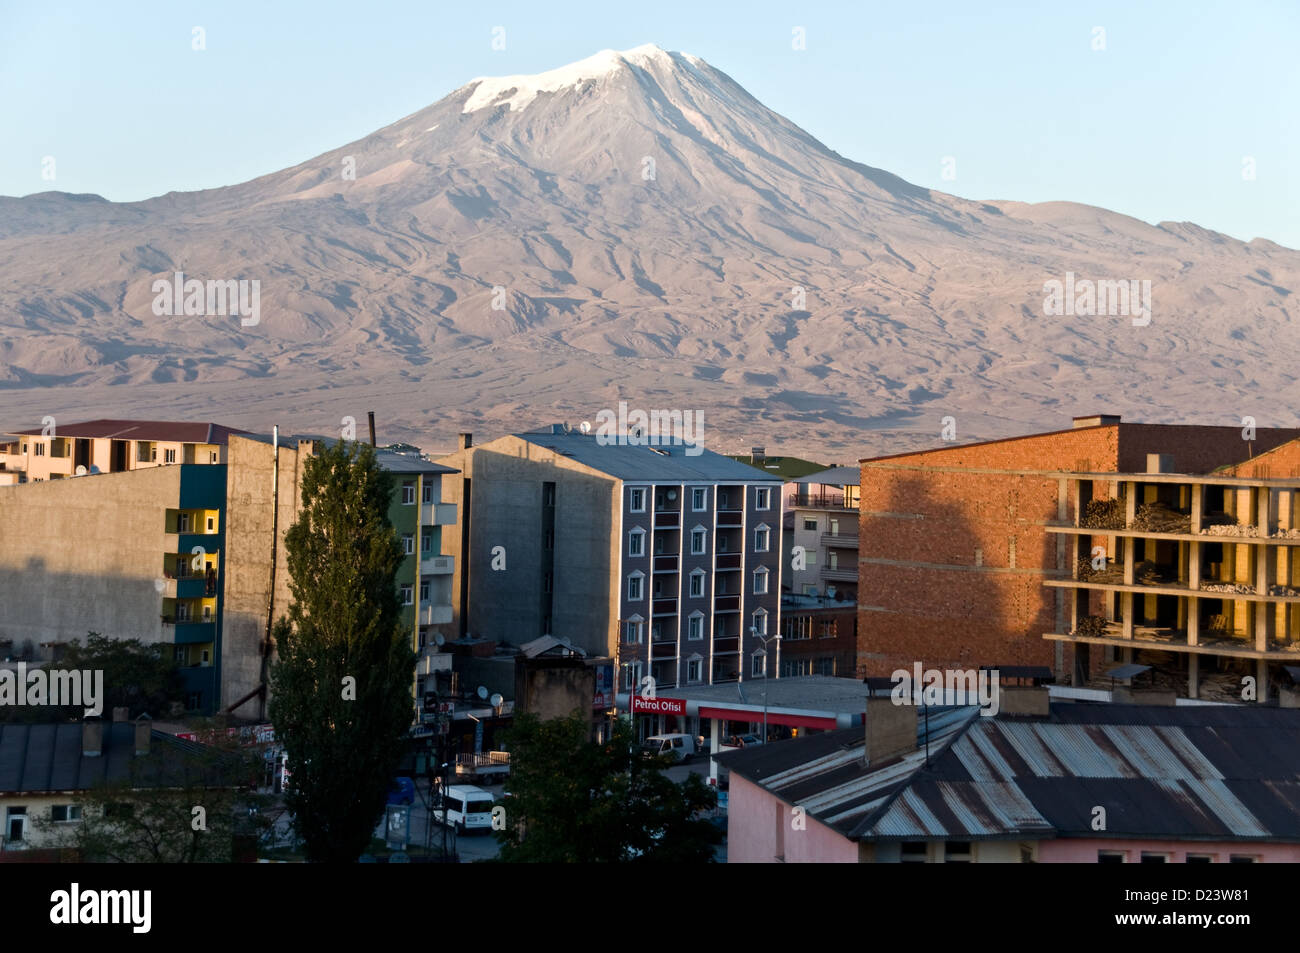 Der Berg Ararat, oder Agri Dagi, eine schneebedeckte ruhenden Vulkanmassiv thront über der Stadt Dogubeyazit in der östlichen Anatolien, Türkei. Stockfoto